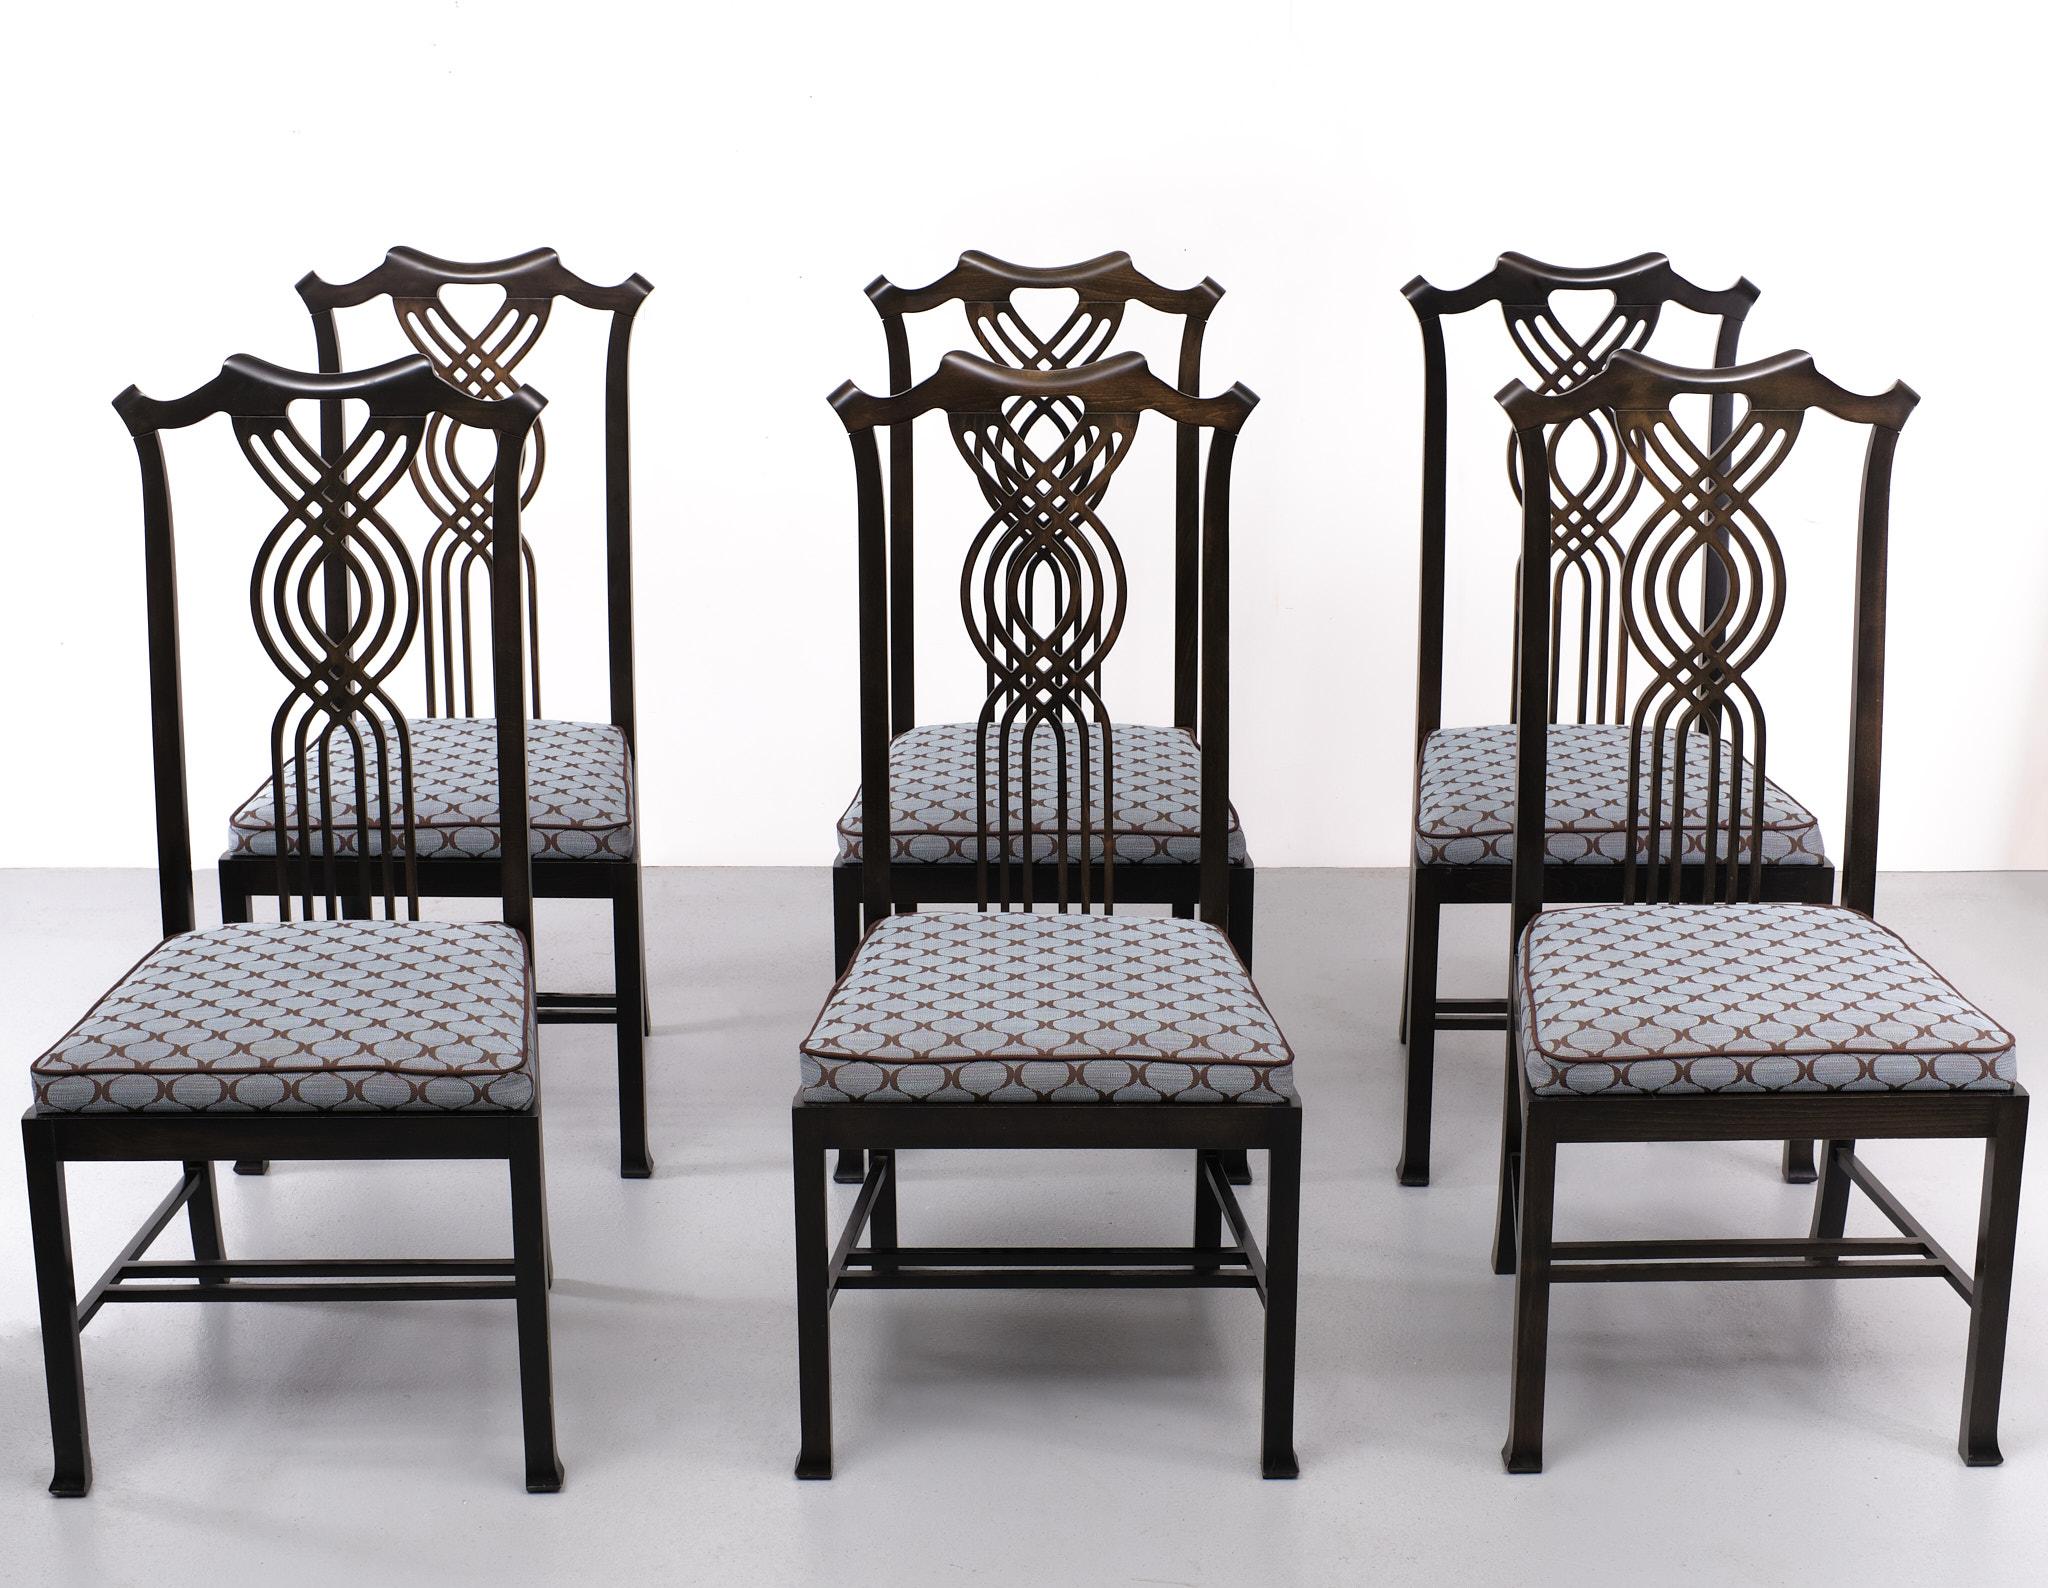 Superbe ensemble de chaises de salle à manger Elegant fabriqué par Giorgetti.  Giorgetti est l'un des plus importants designers de meubles italiens.  fondée par Luigi Giorgetti. Les designs de Giorgetti sont toujours en avance sur leur temps et